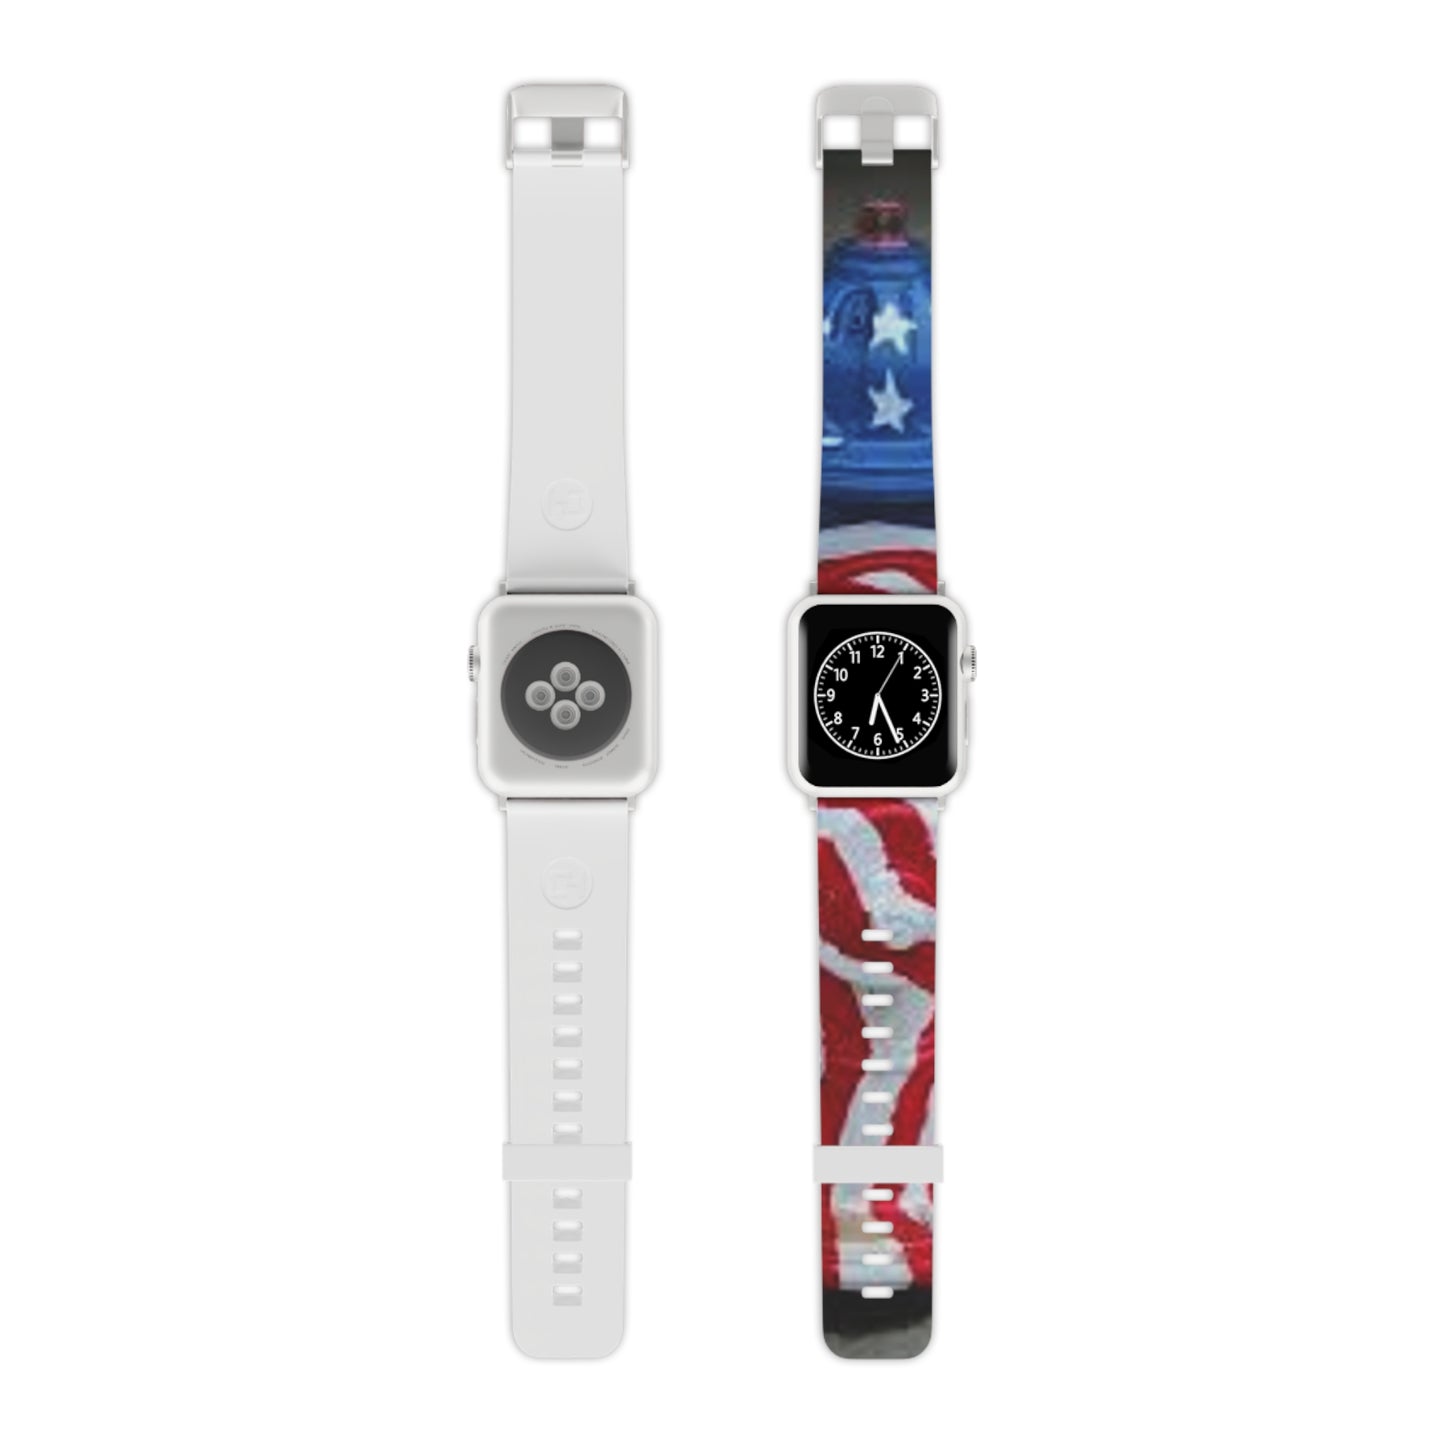 Patriotisches Feuerhydranten-Uhrenarmband für die Apple Watch